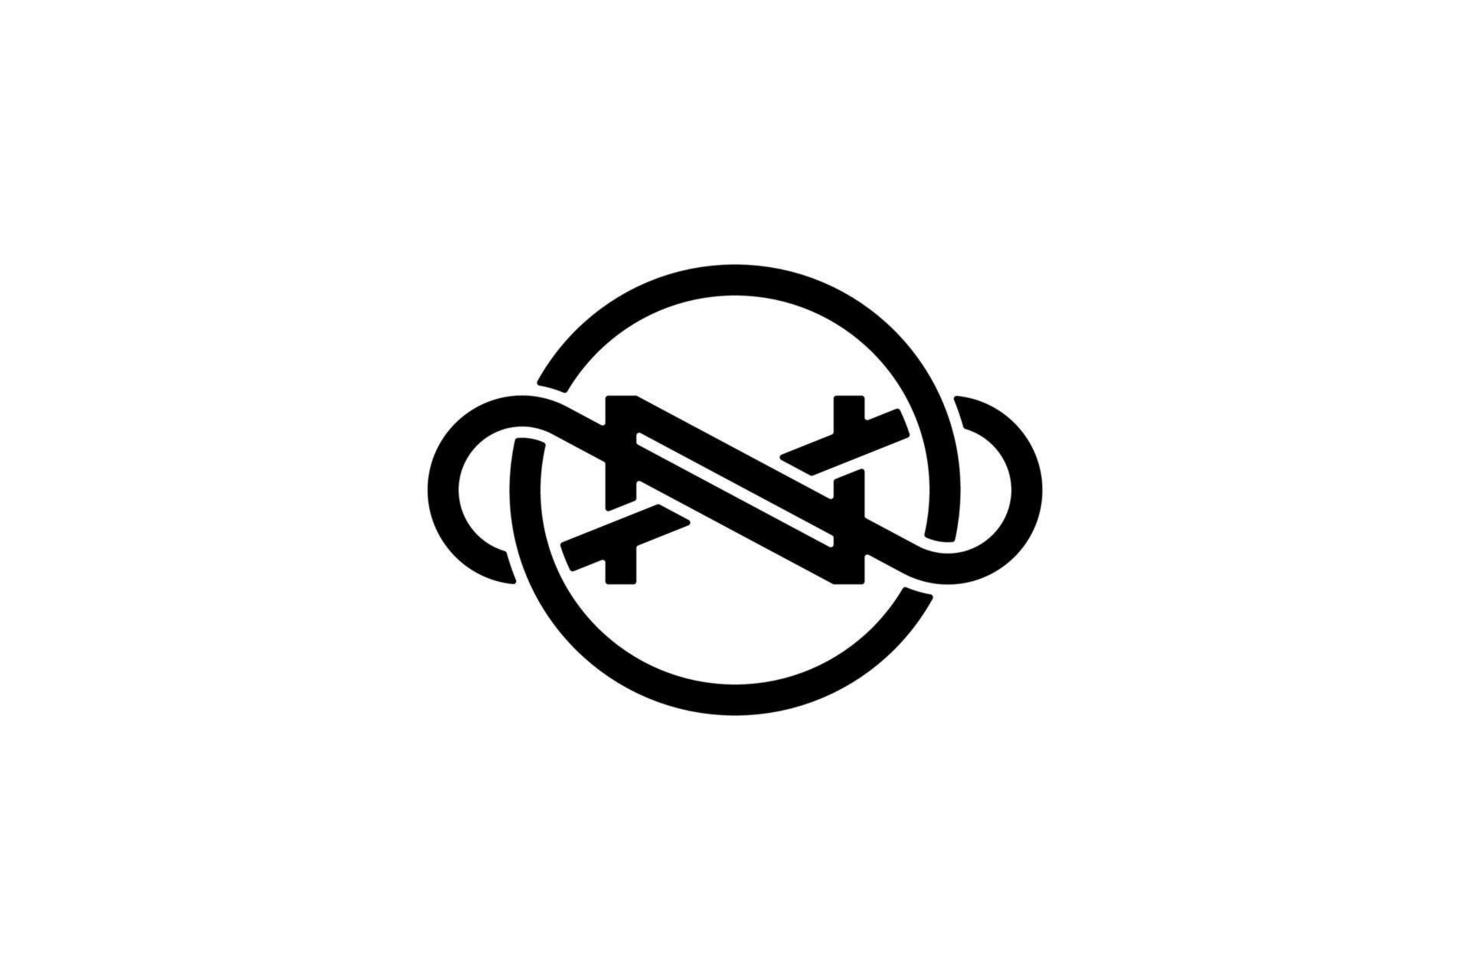 noir blanc cercle infini lettre n logo vecteur